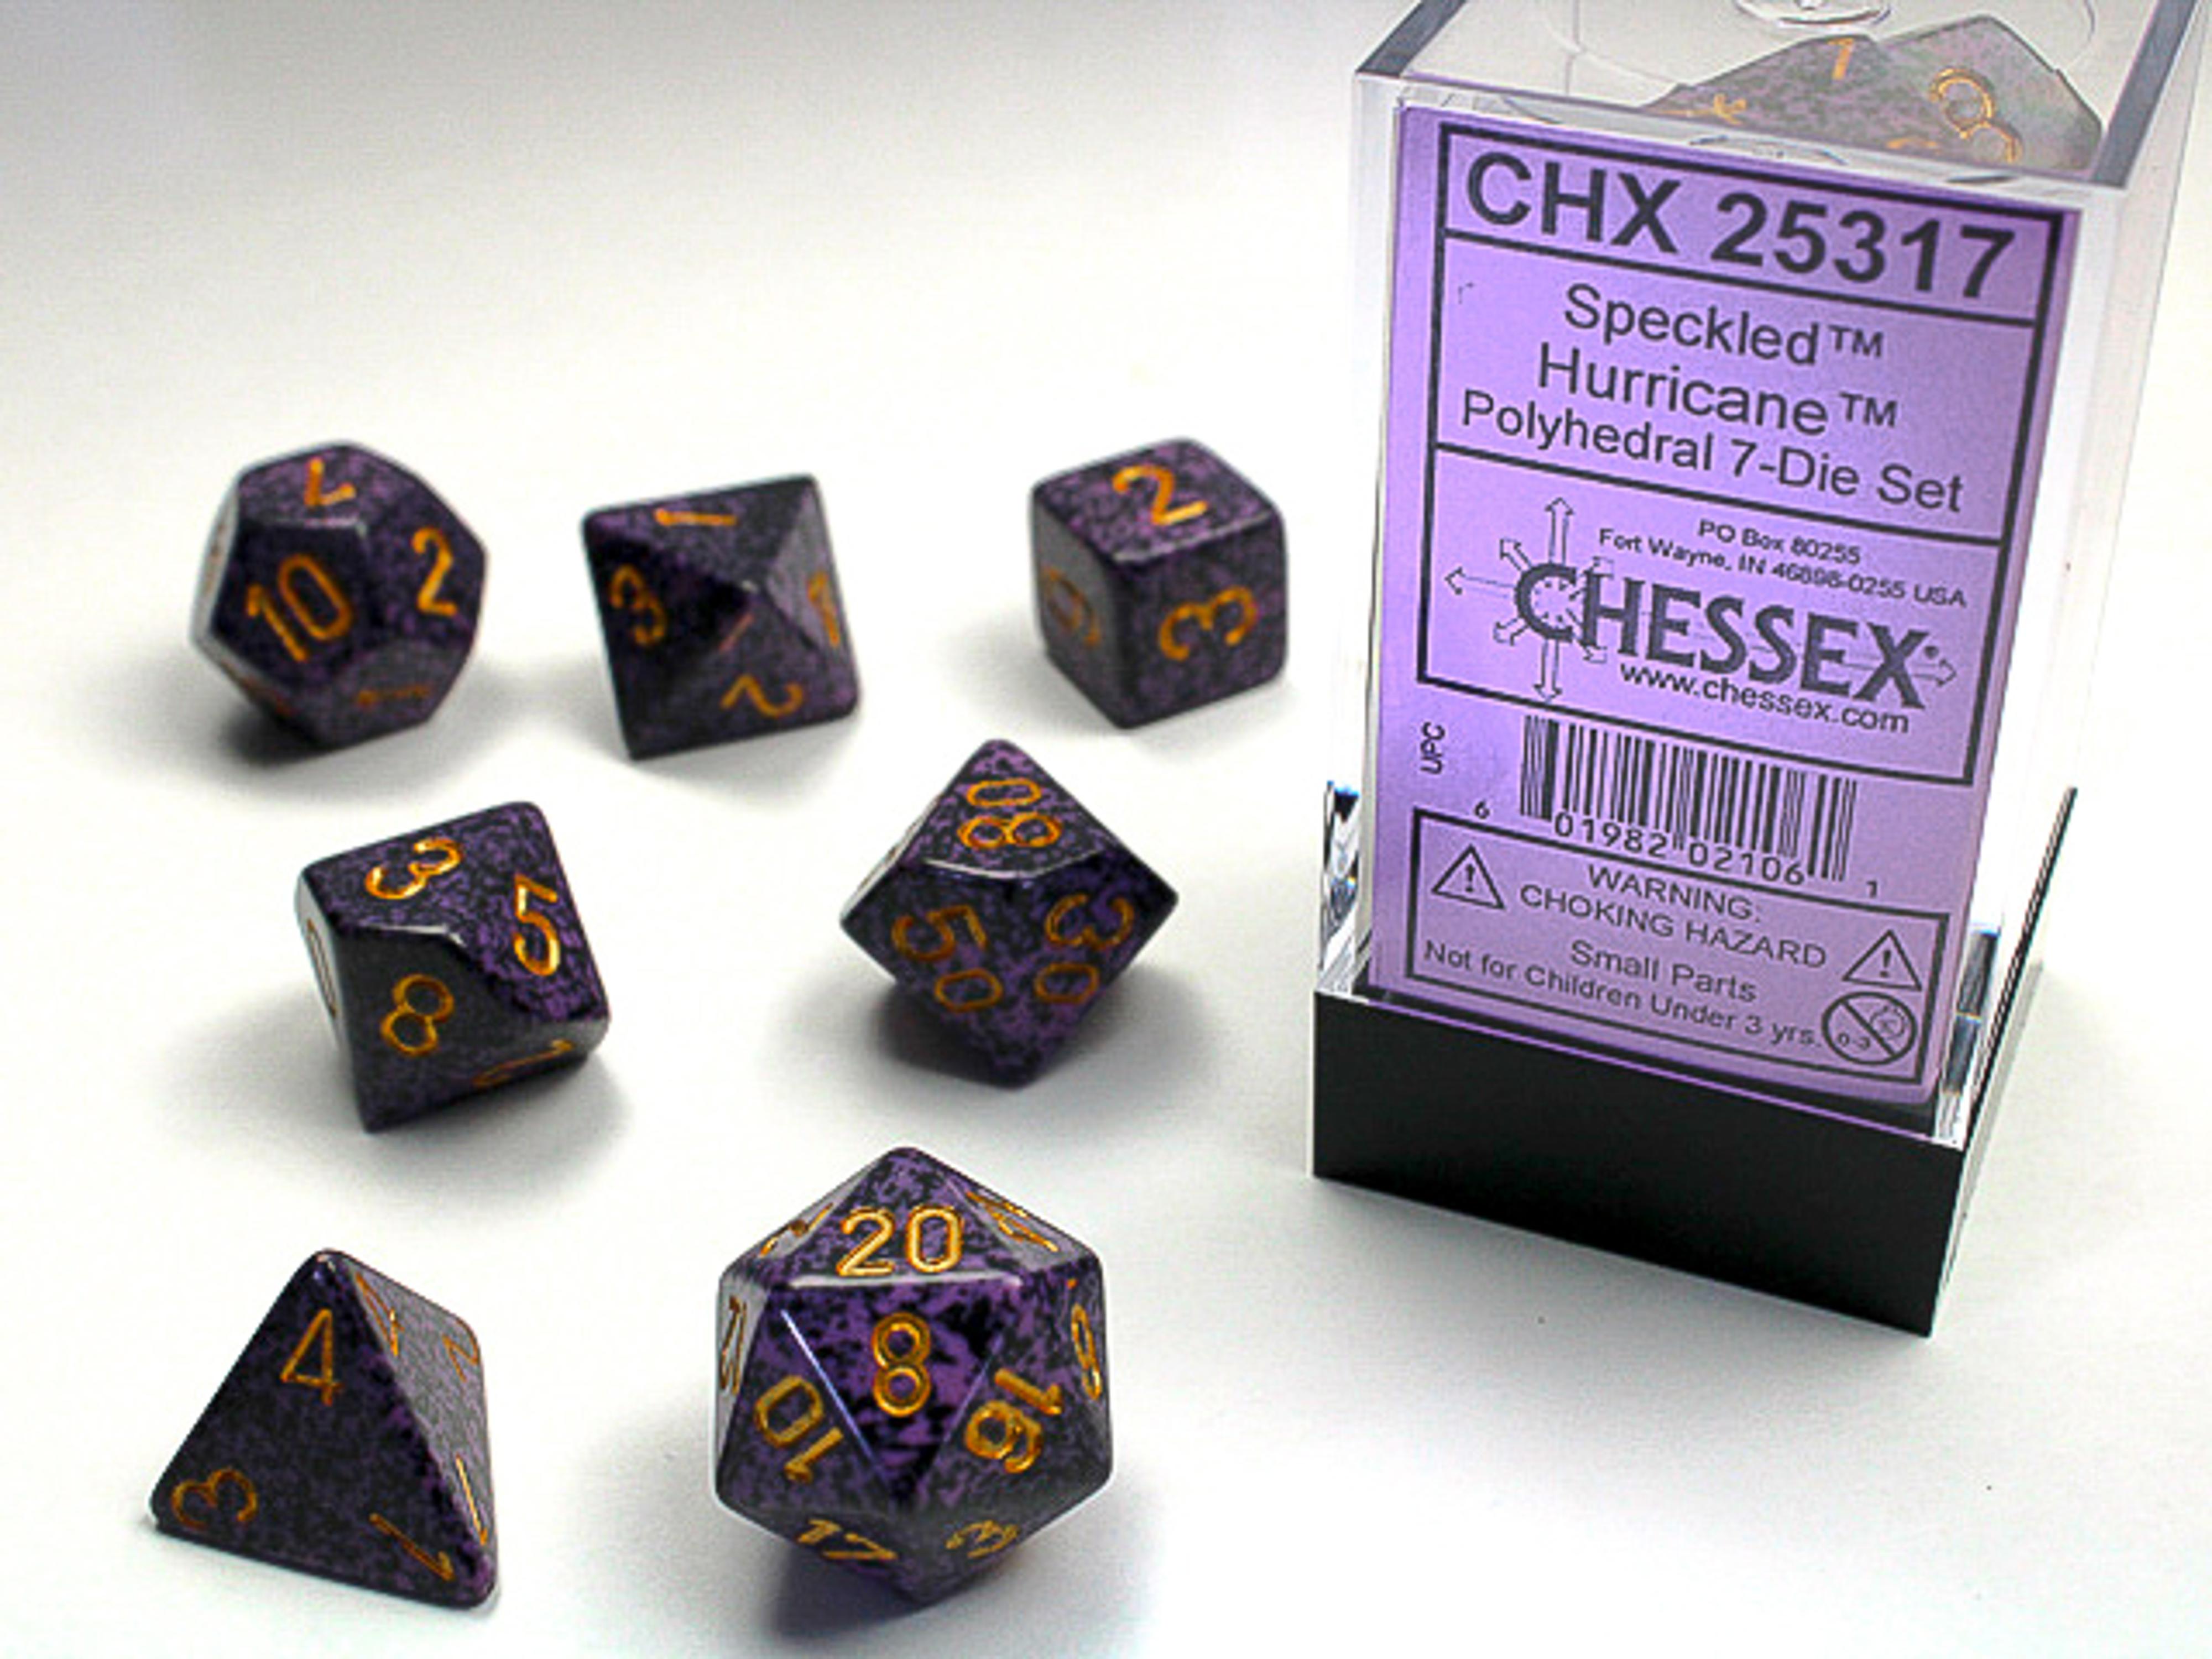 Chessex Speckled Polyhedral Hurricane 7 Die Set